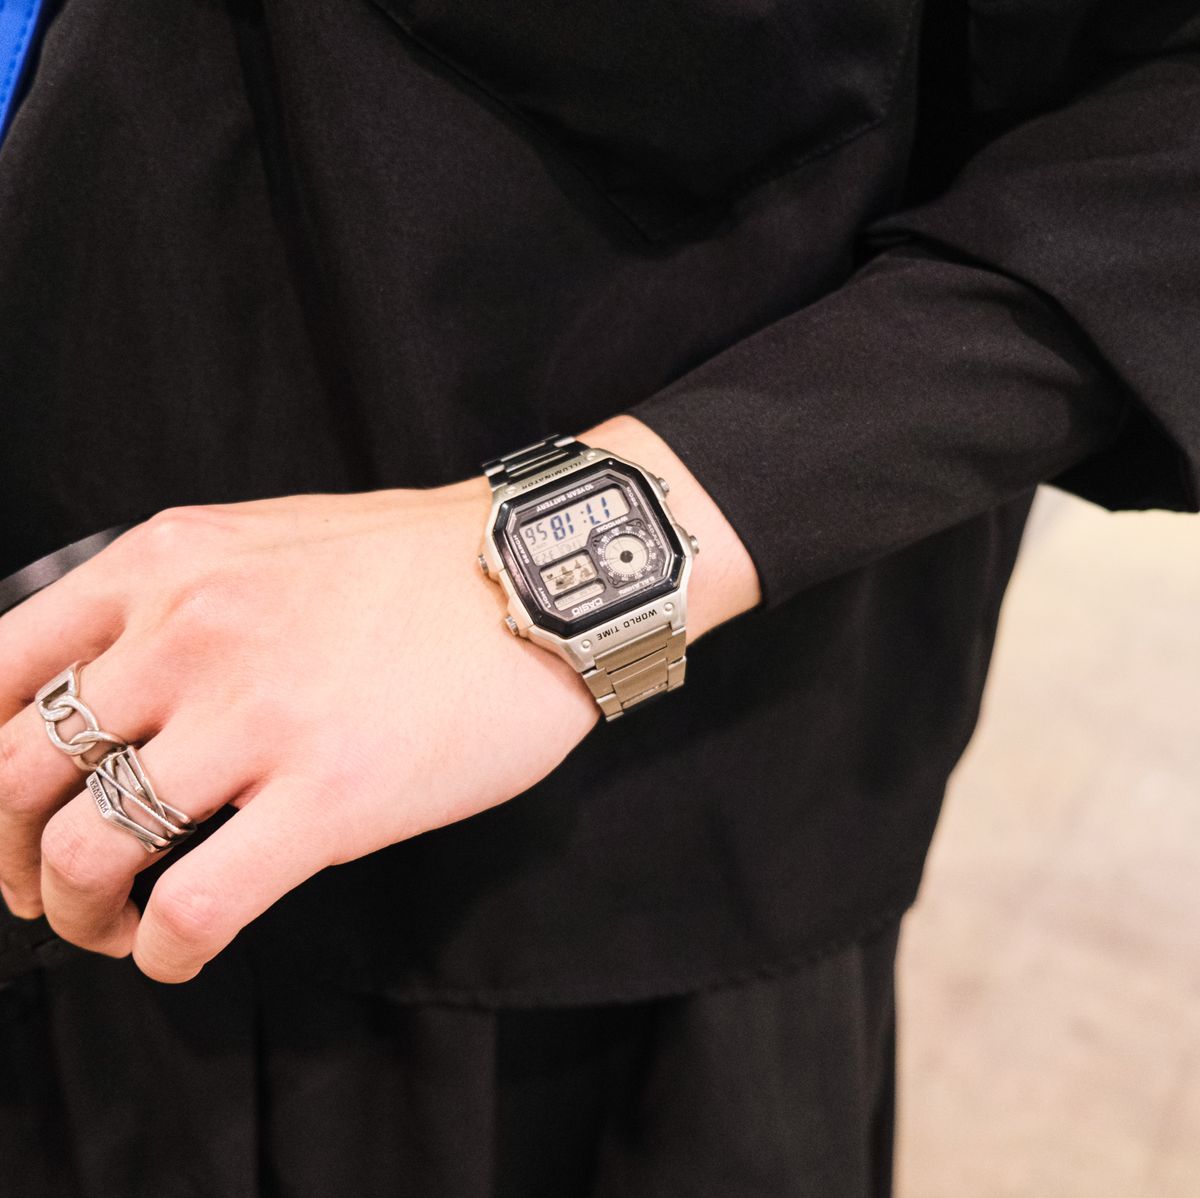 Reloj Timex para Hombre Plata Acero Inoxidable Acero Fecha Día Batería Azul  Resistente al Agua Cuarzo